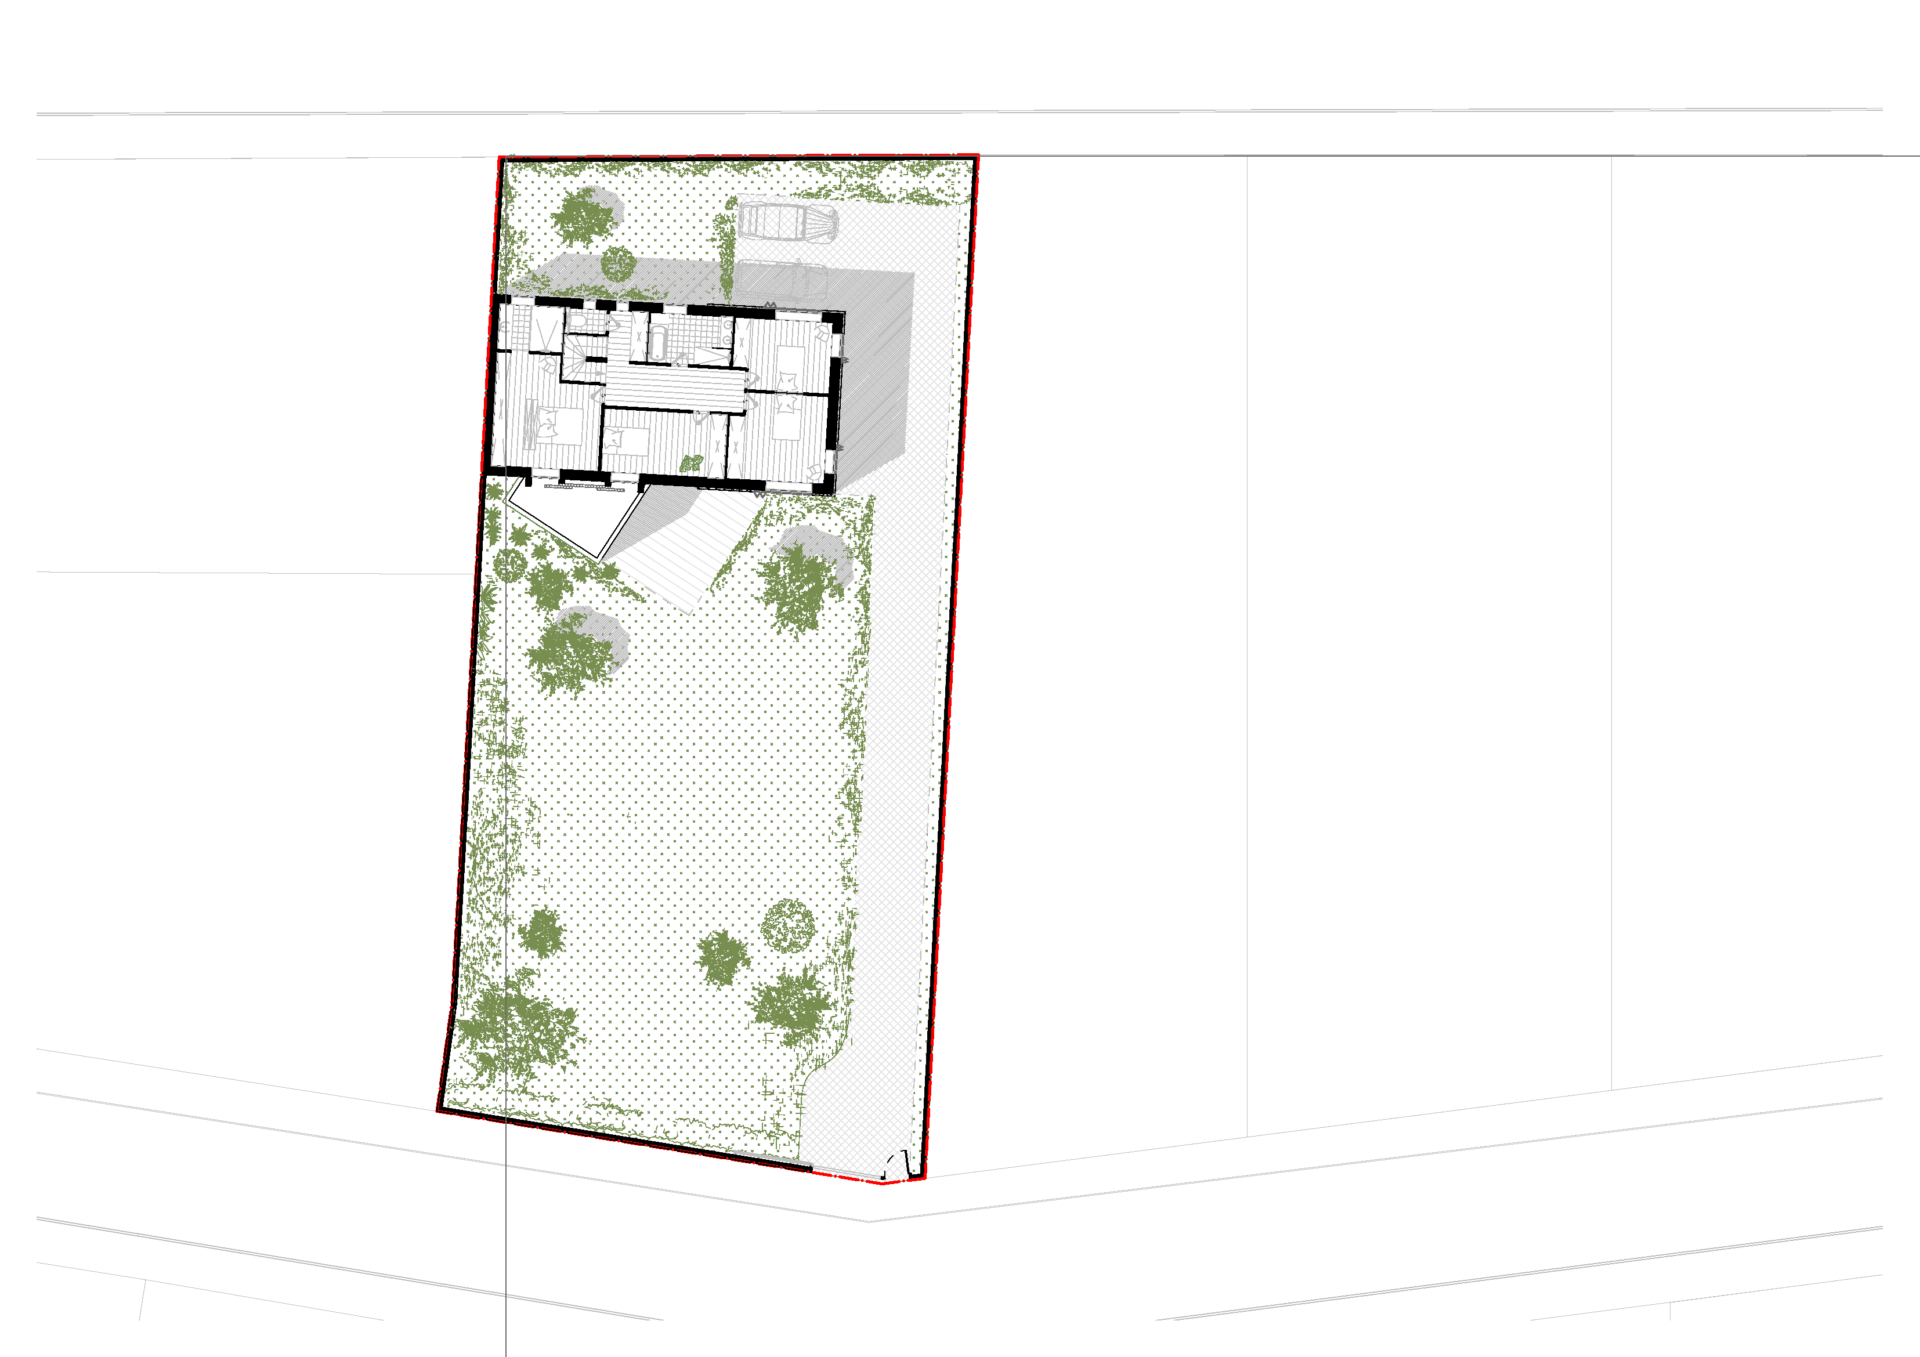 Plan de la parcelle en R+1 soit l'étage